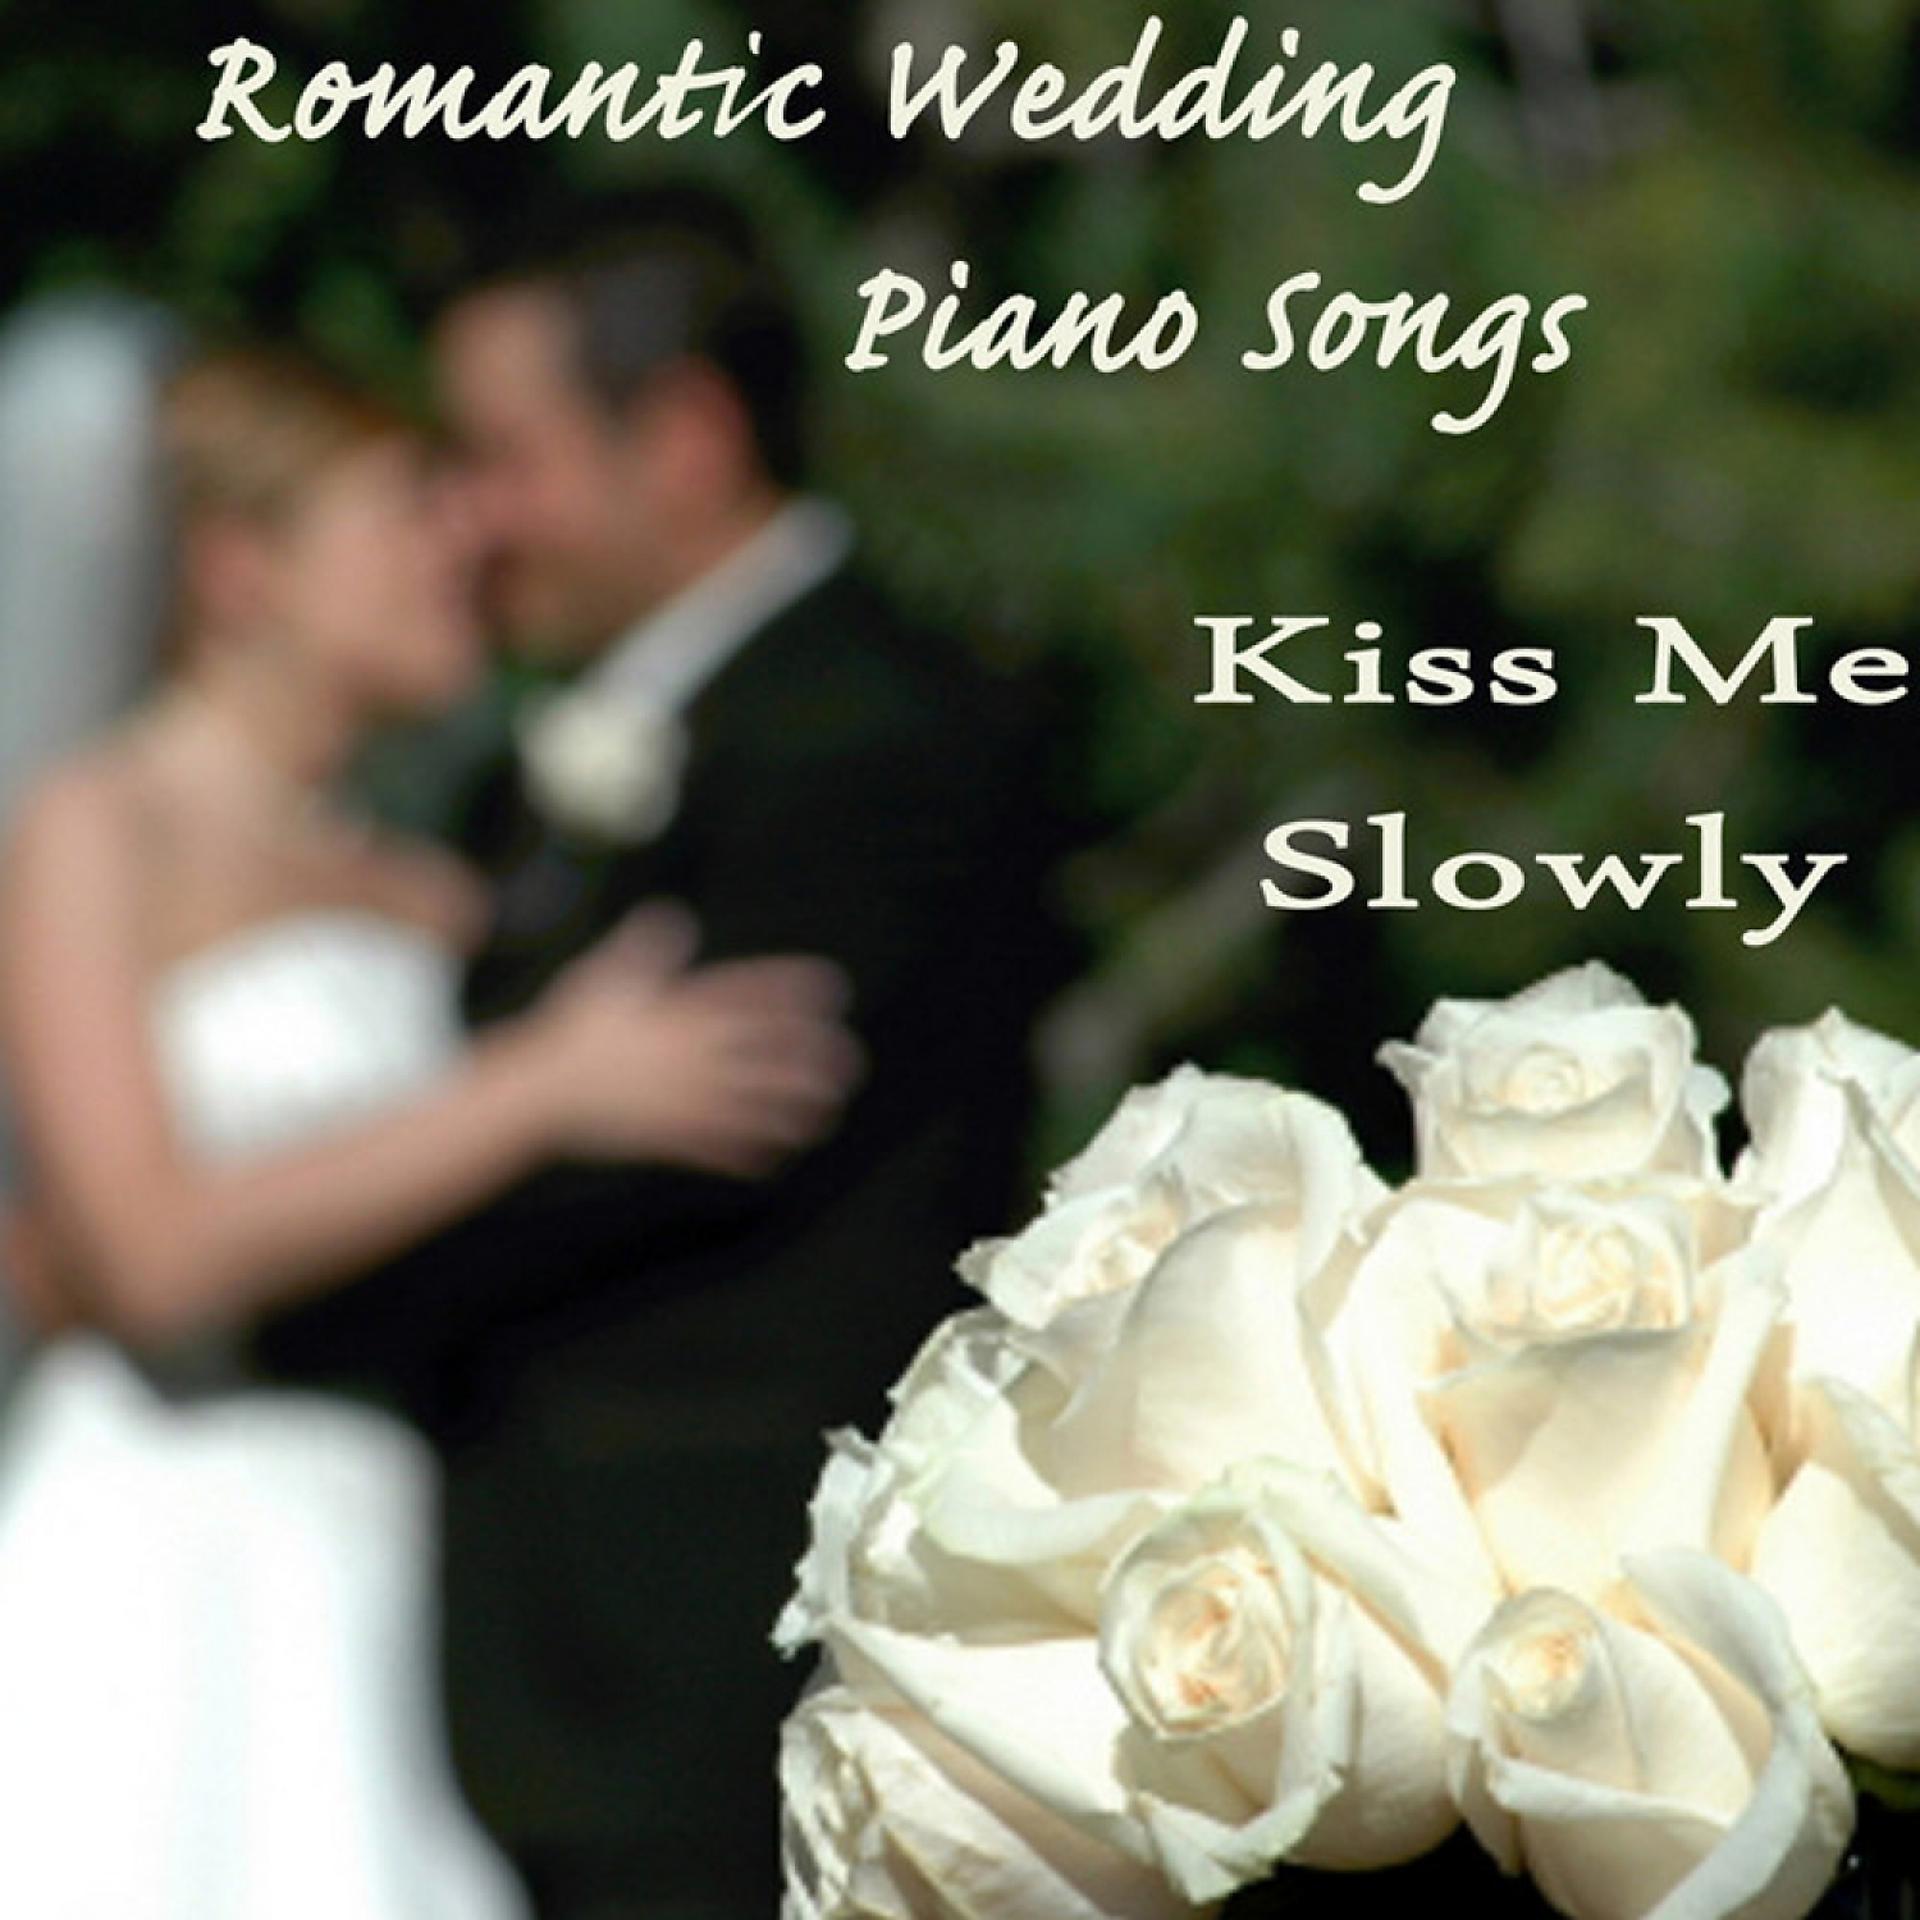 Kiss me slowed. Веддинг пиано.